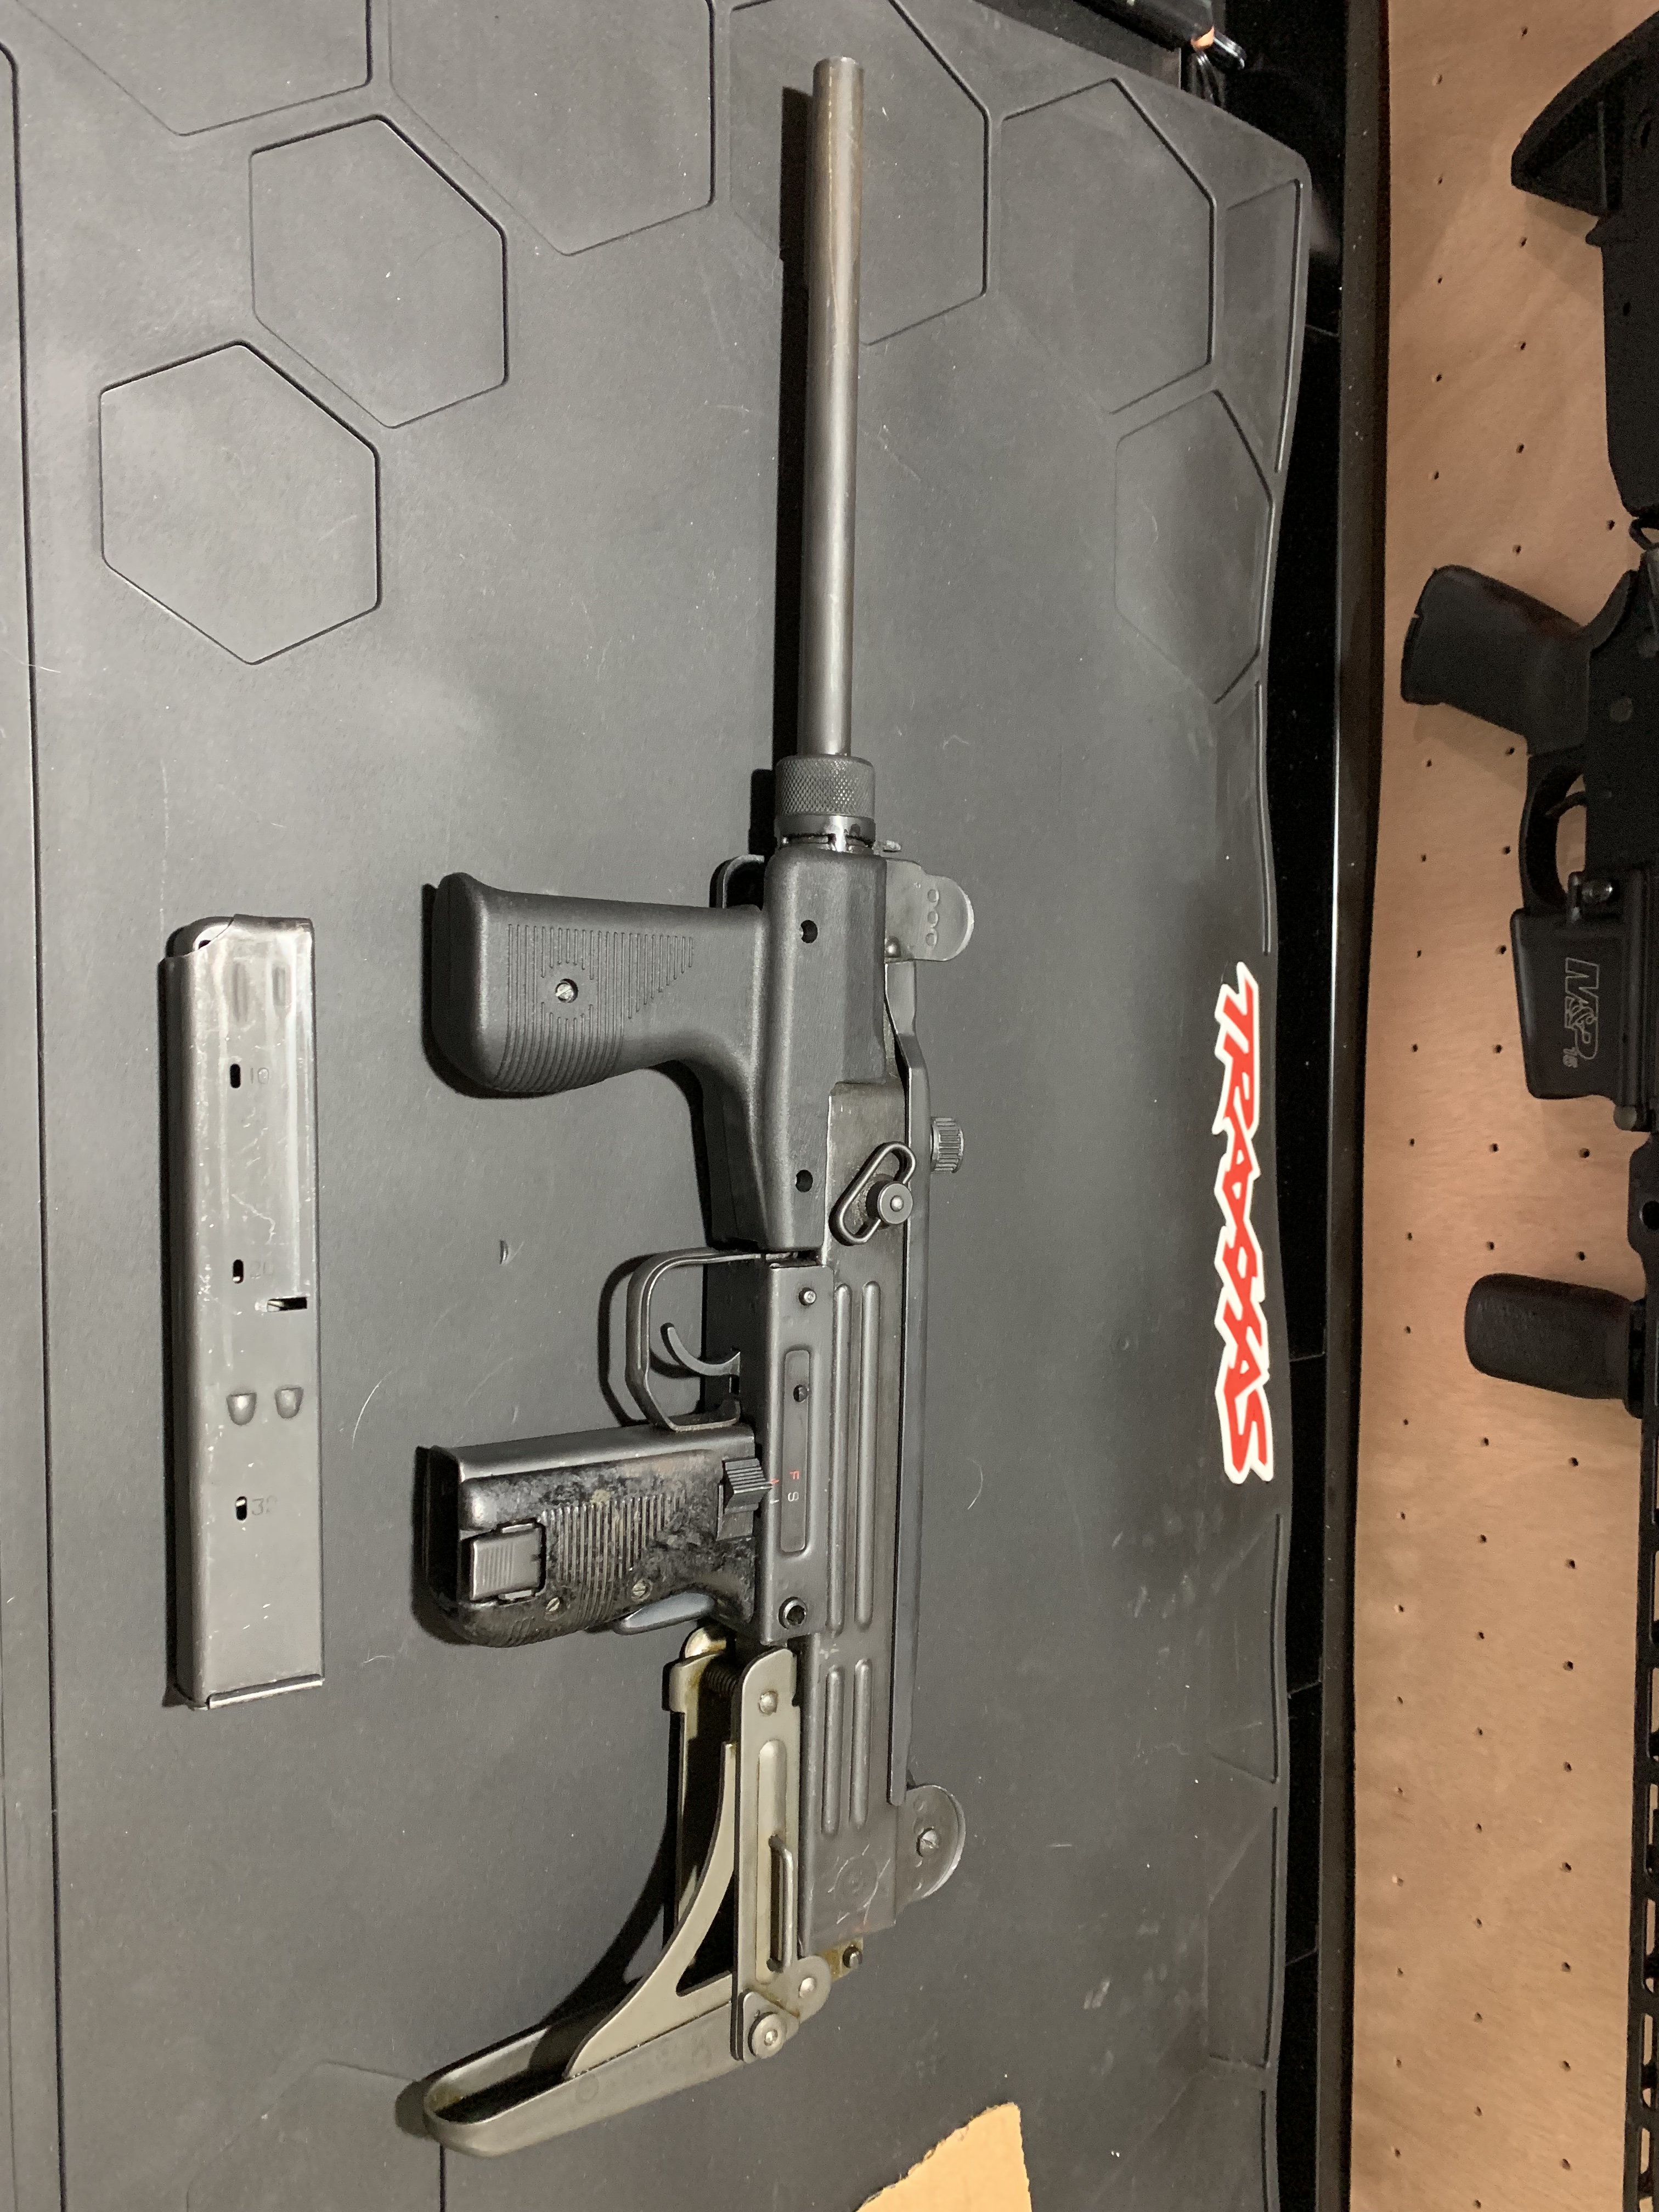 Norinco 320 9mm ("Uzi") - Montana Gun Trader